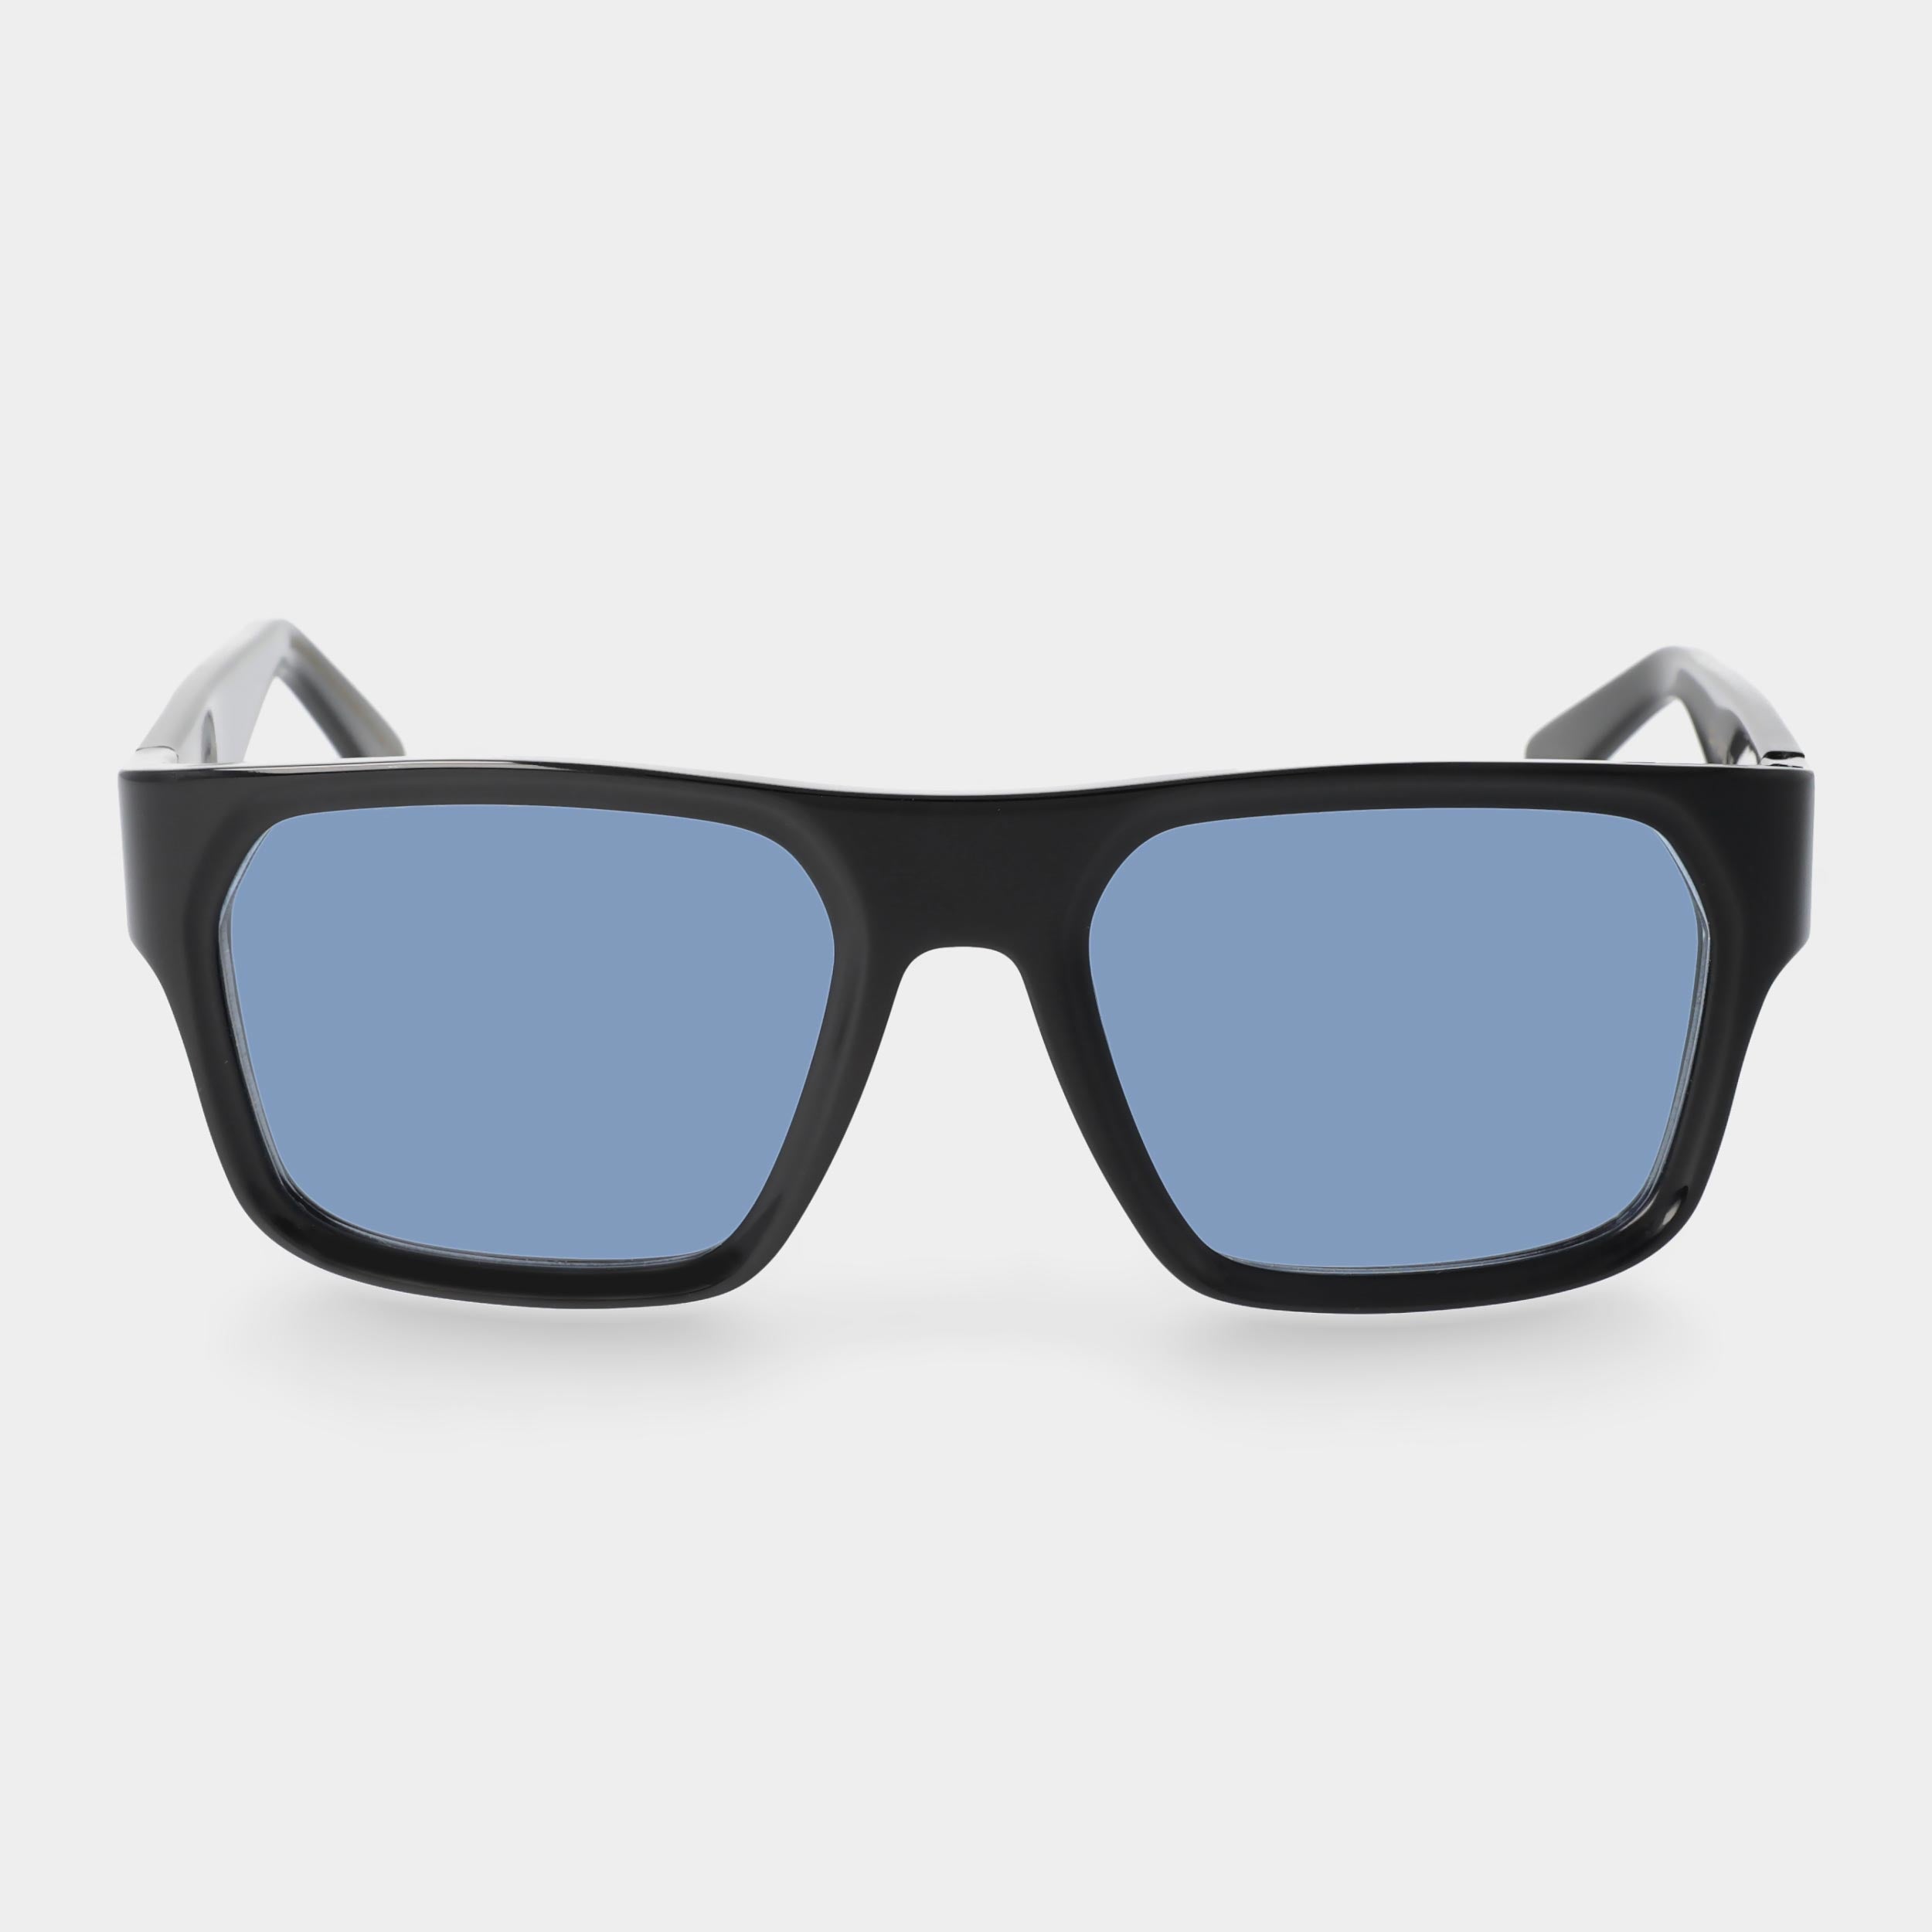 sunglasses-Elm-eco-black-blue-sustainable-tbd-eyewear-front